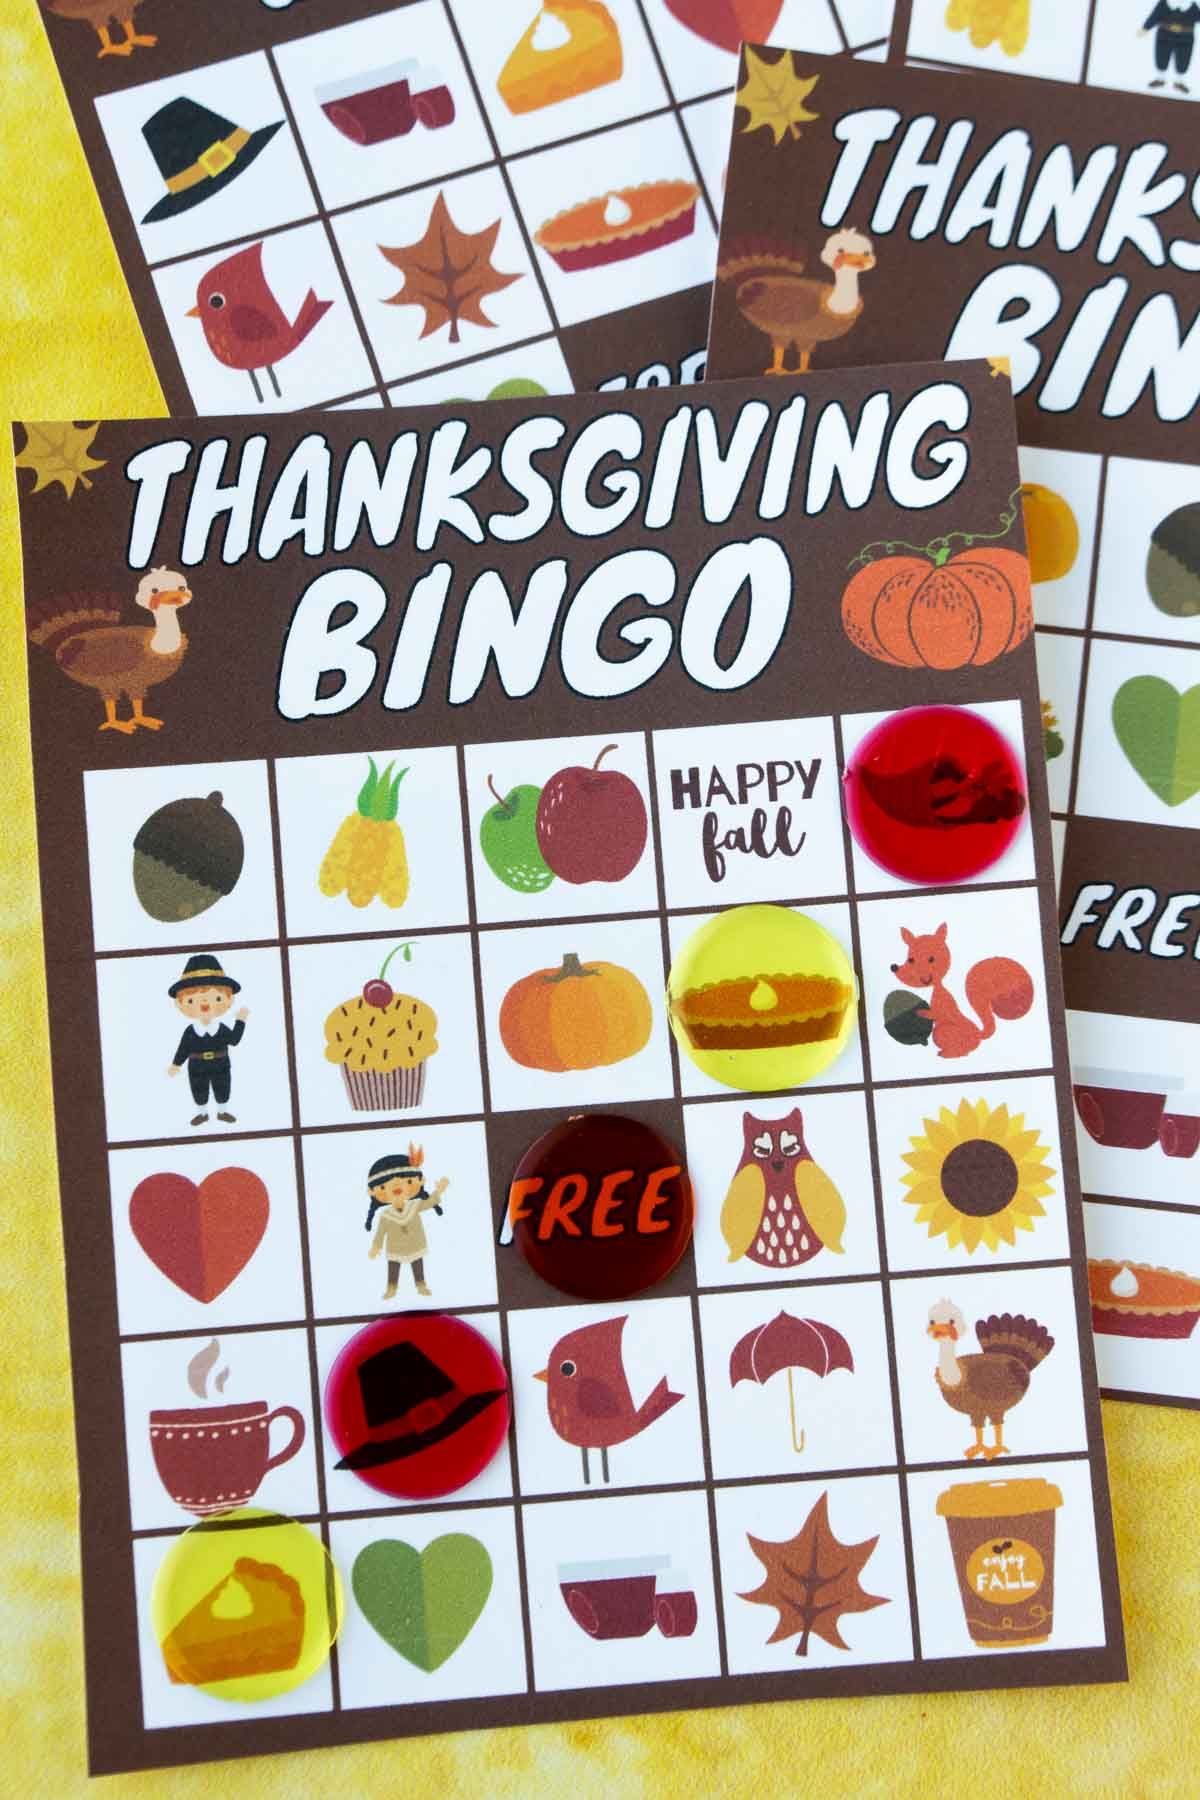 Cartão de bingo de Ação de Graças com marcadores de bingo